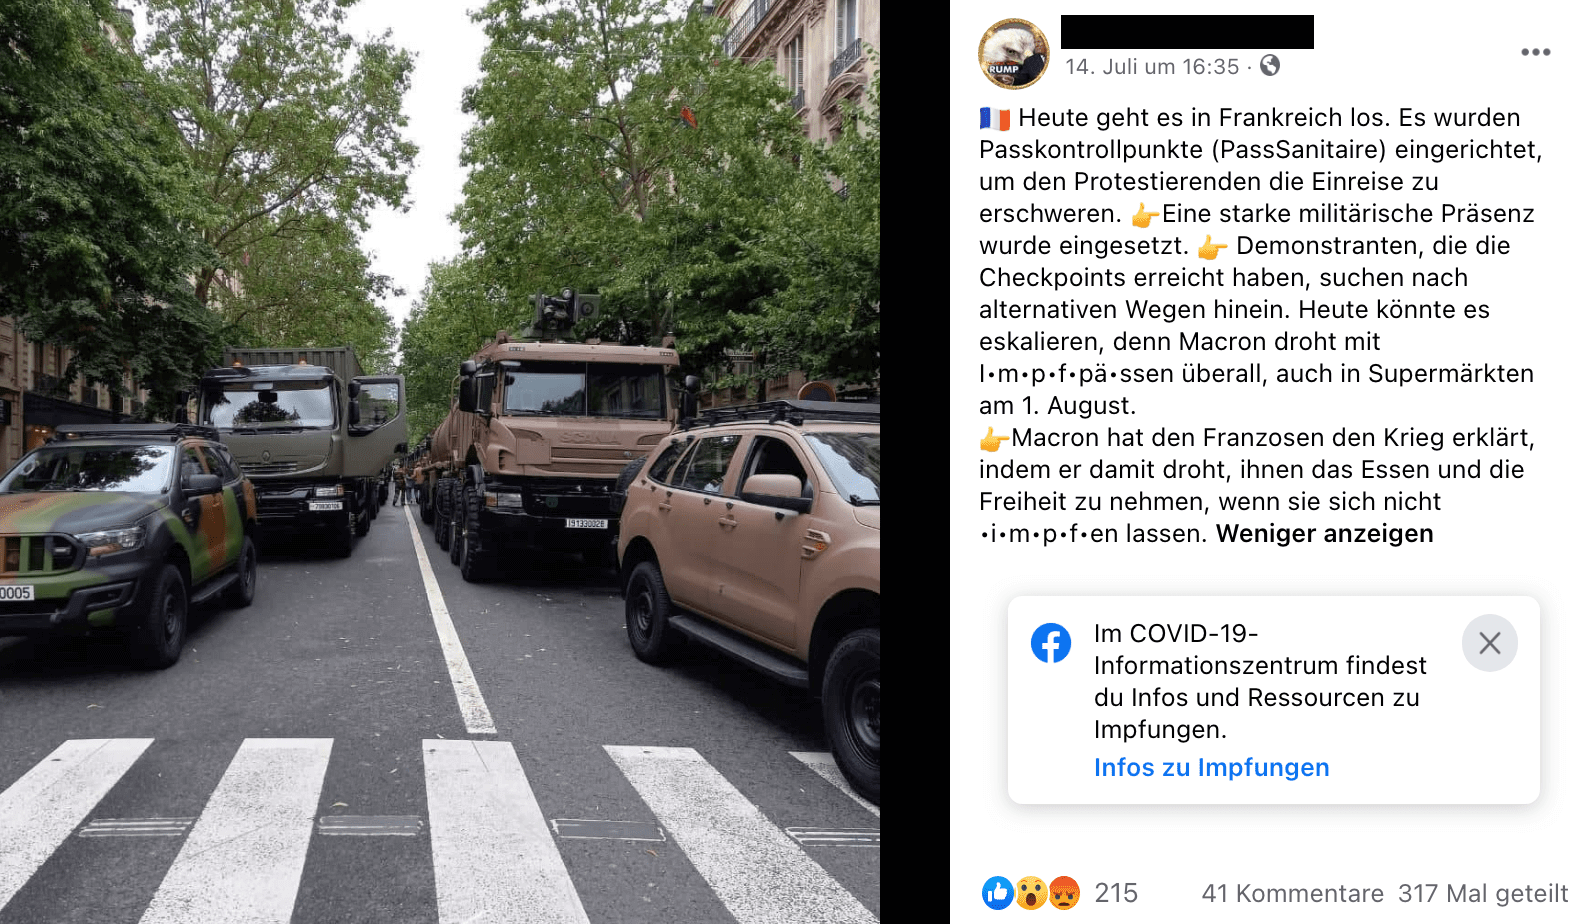 Camouflage-Fahrzeuge stehen in einer Straße 